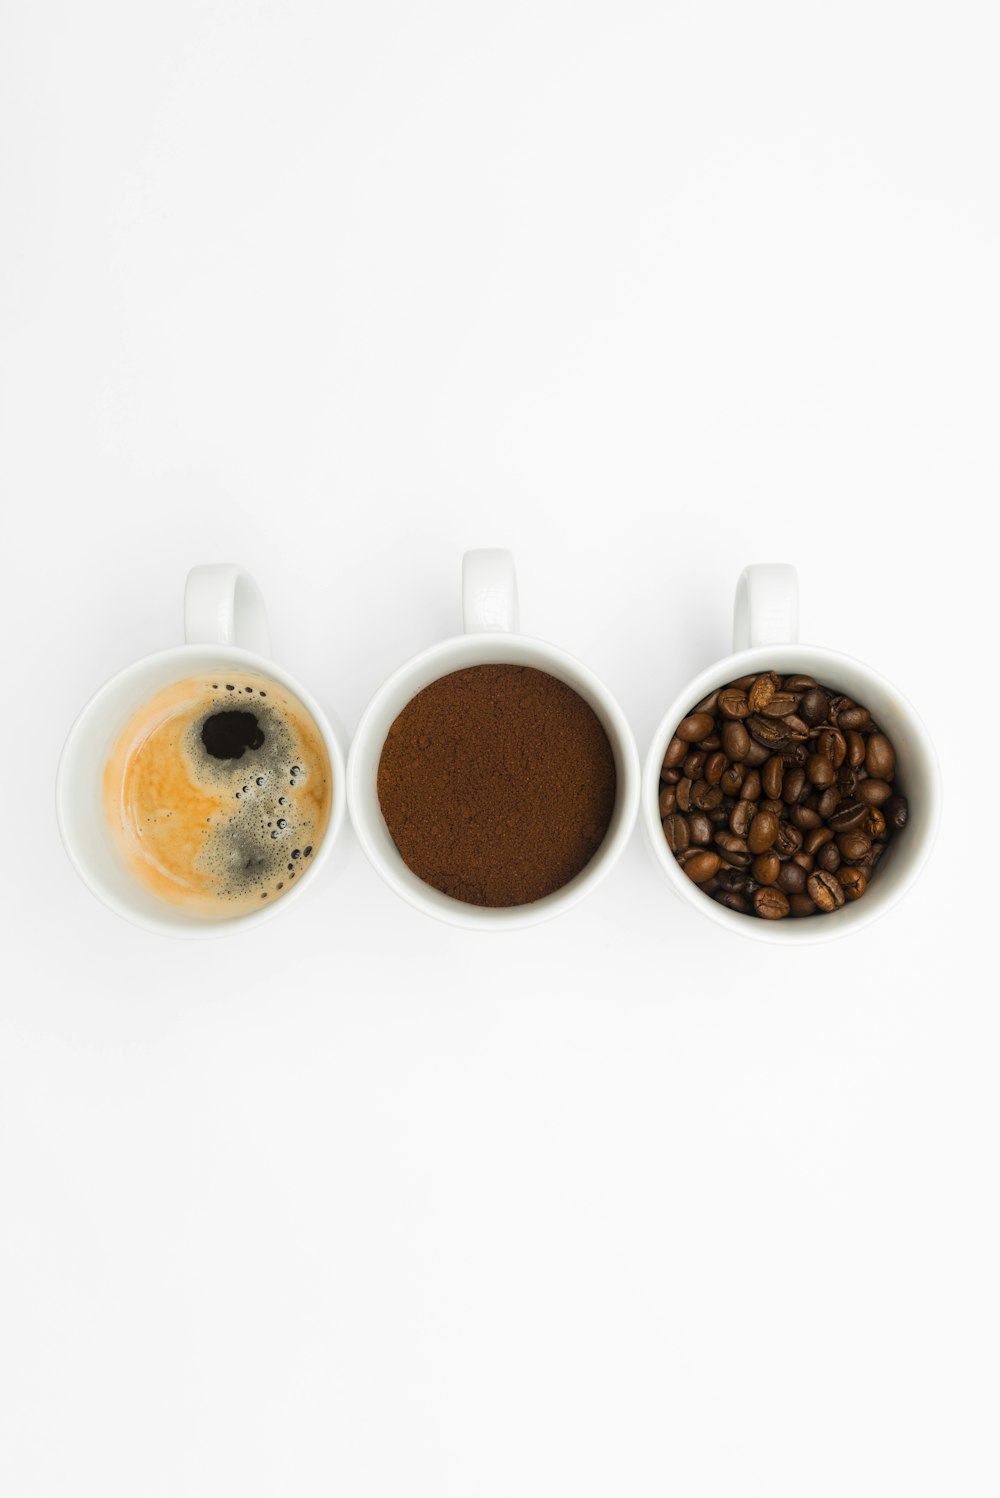 tre tazze da caffè riempite con diversi tipi di caffè